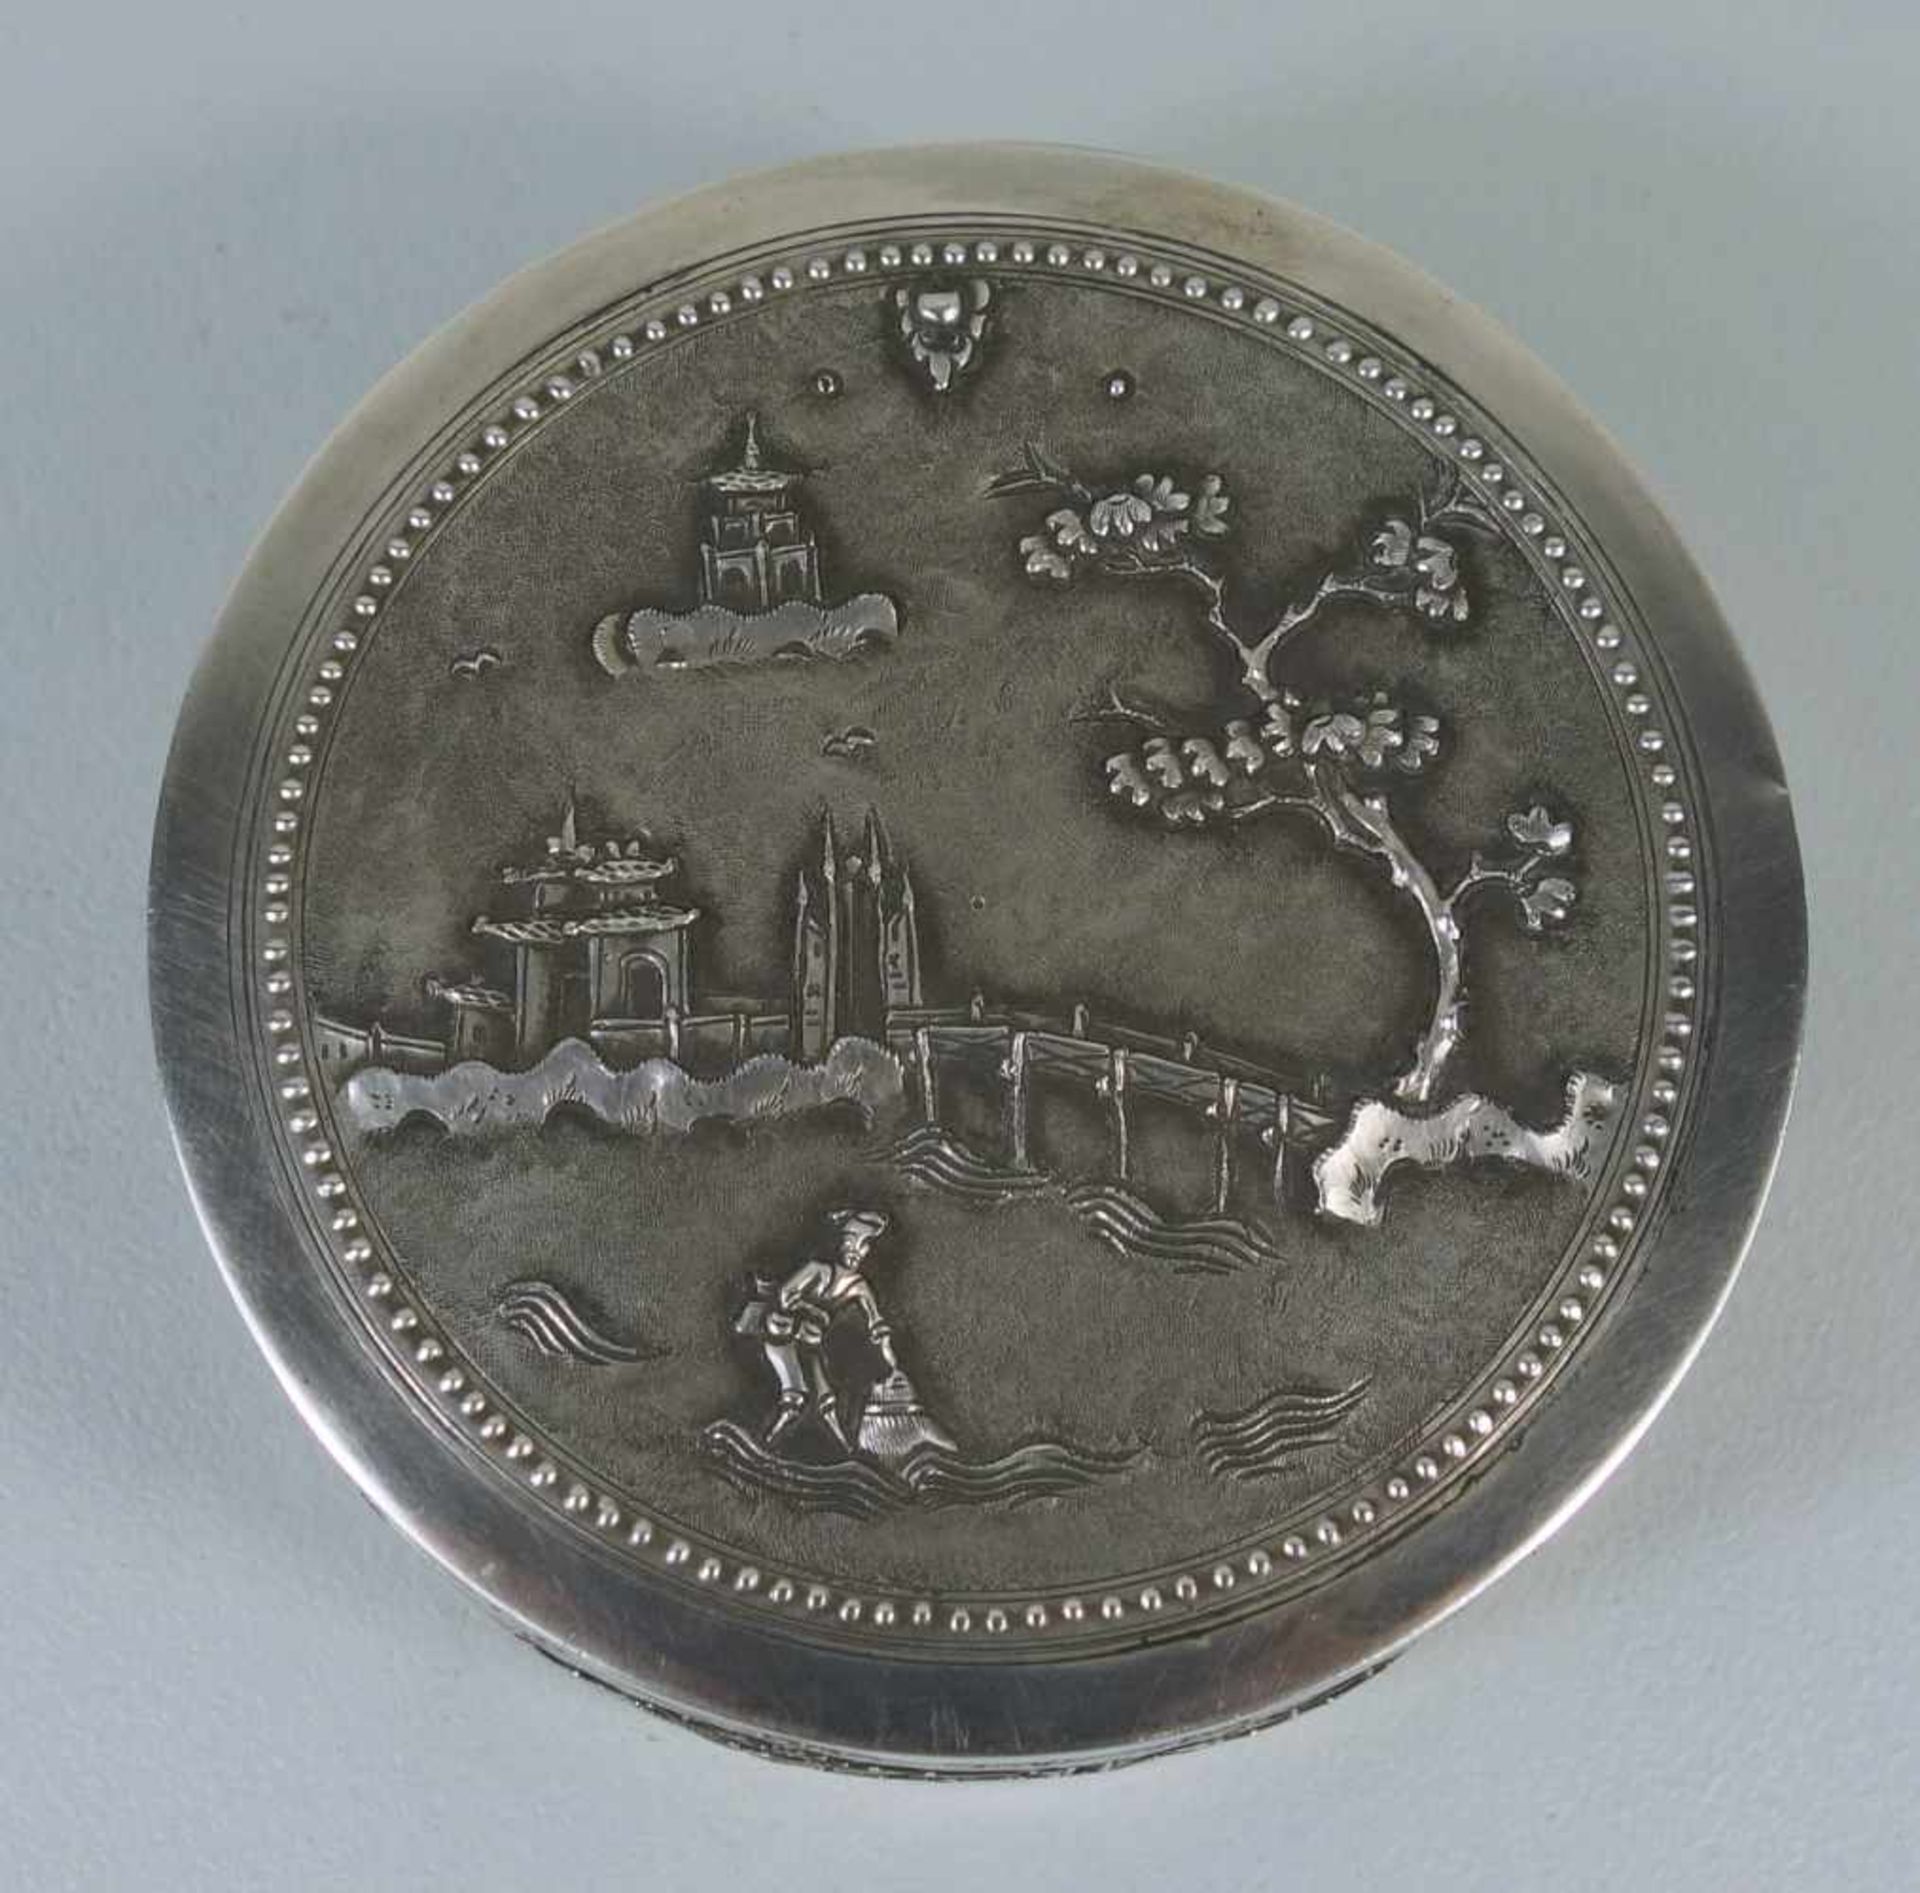 runde Deckeldose, Vietnam, 50er/60er Jahre, 900er Silberrunde, zweiteilige Dose mit Deckel, - Image 2 of 2